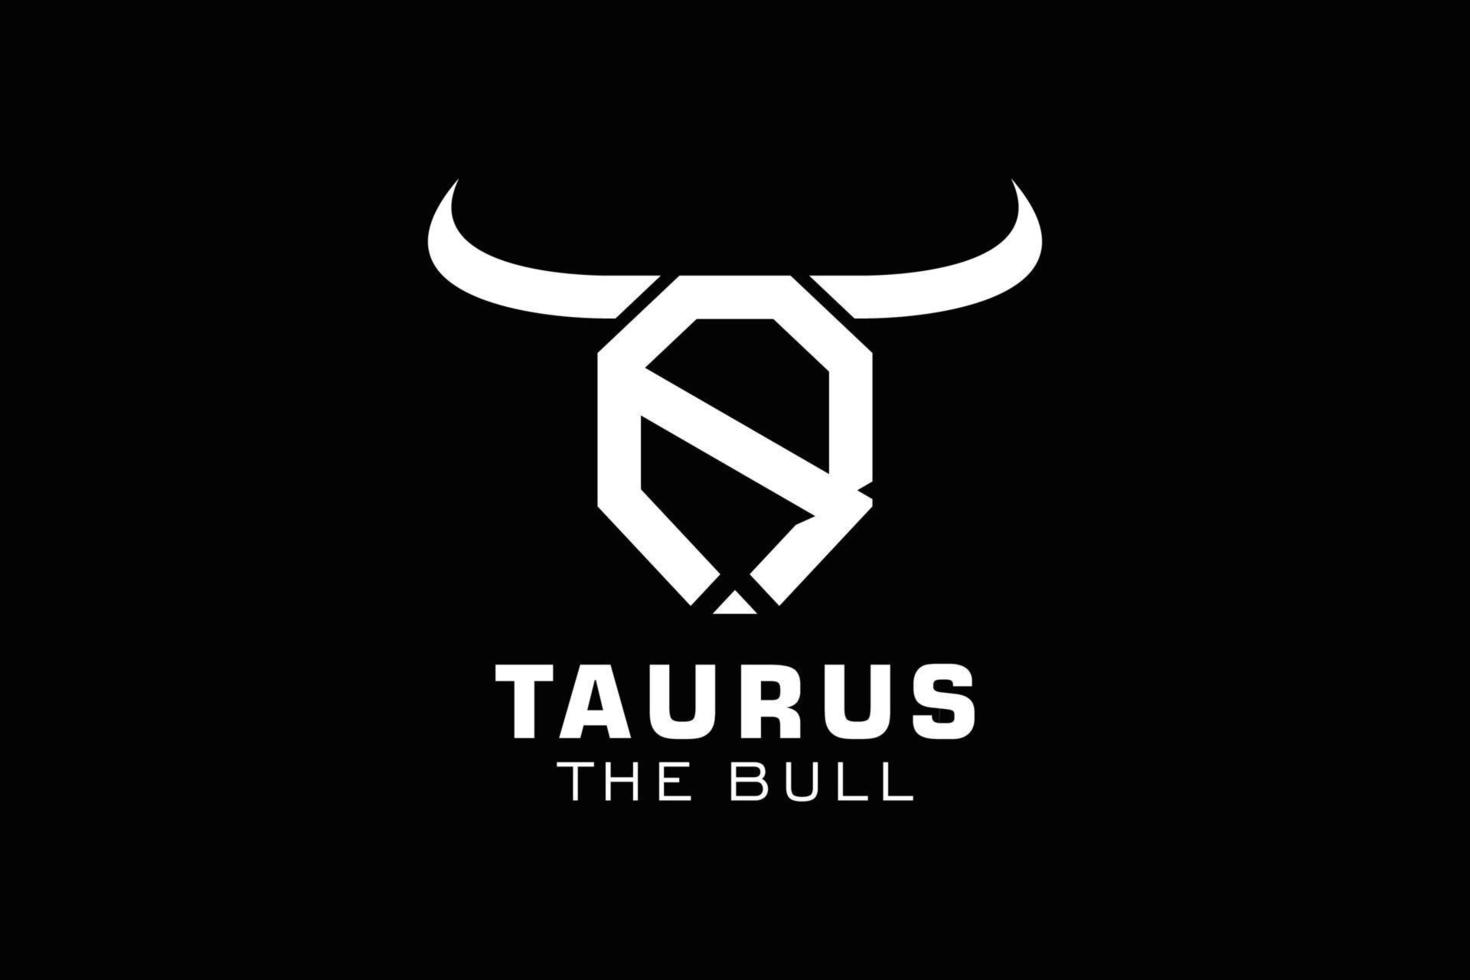 logotipo da letra r, logotipo do touro, logotipo da cabeça do touro, elemento de modelo de design do logotipo do monograma vetor